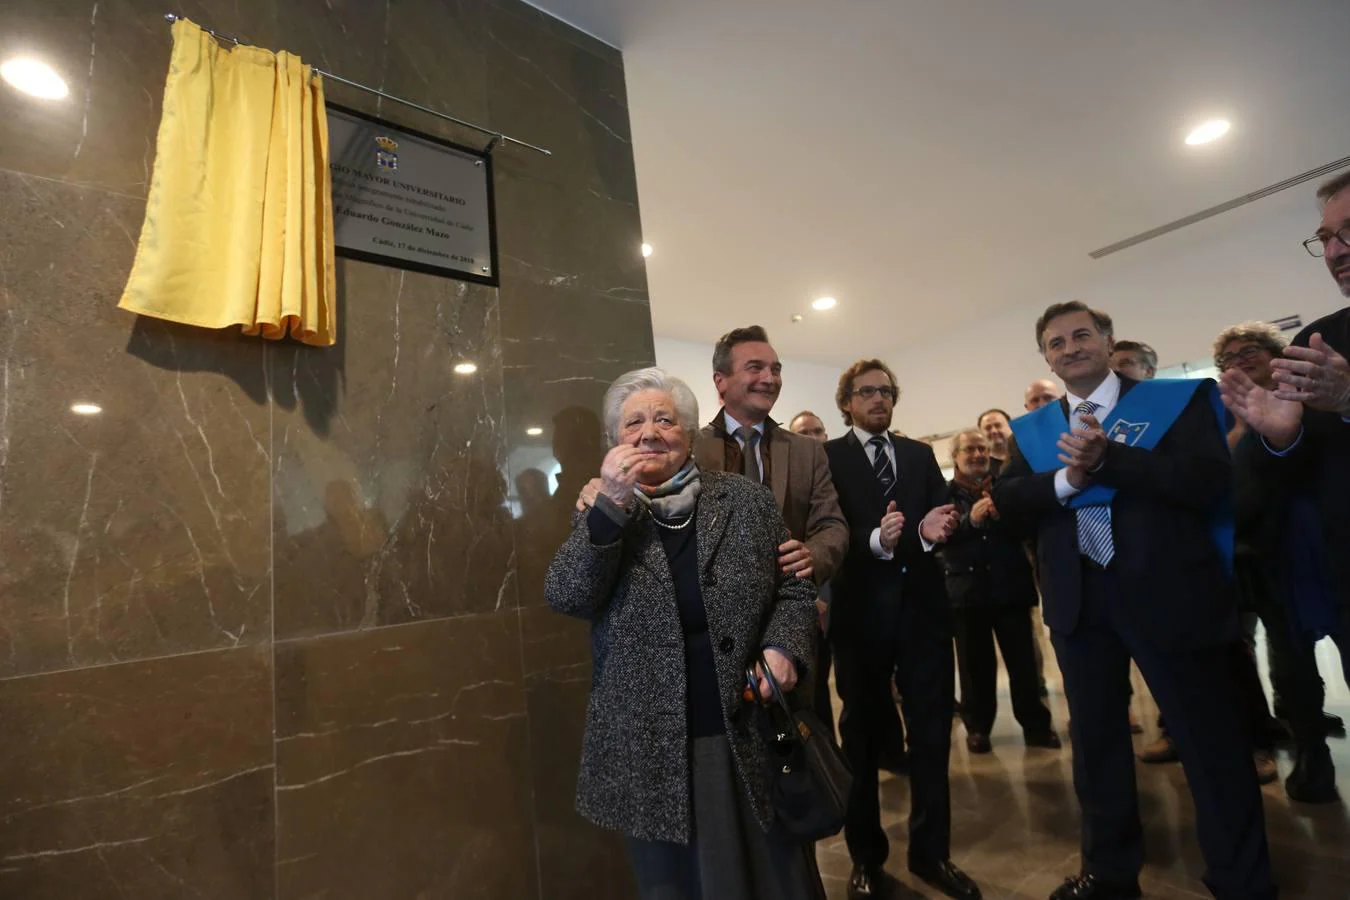 En imágenes: Inauguración de la rehabilitación del Colegio Mayor de la Universidad de Cádiz